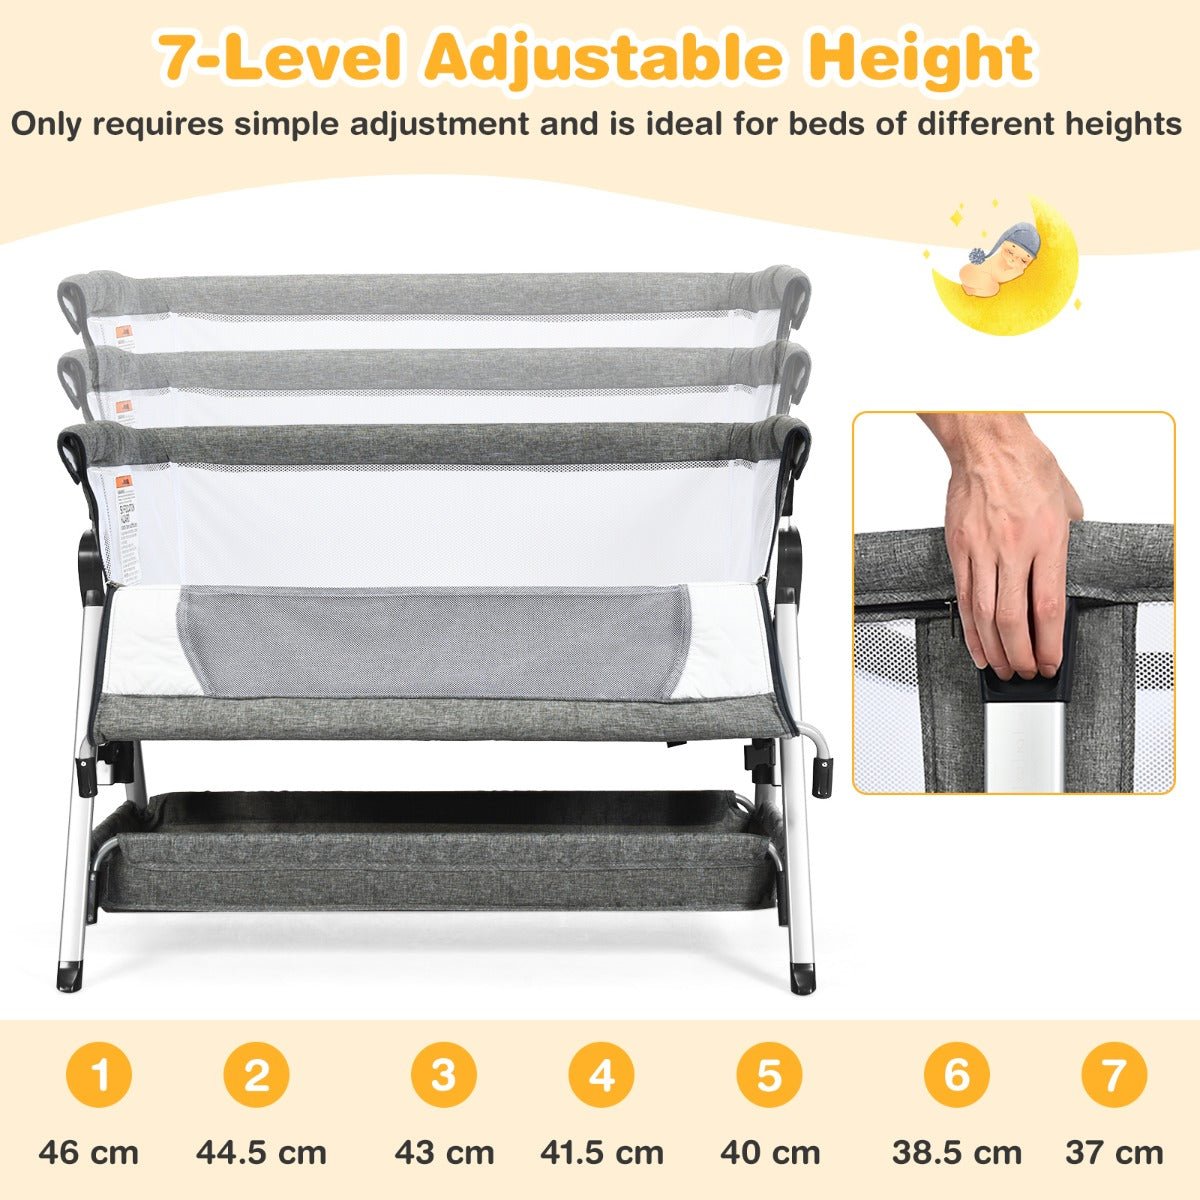 Adjustable Dark Grey Baby Cot - Your Baby's Comfort